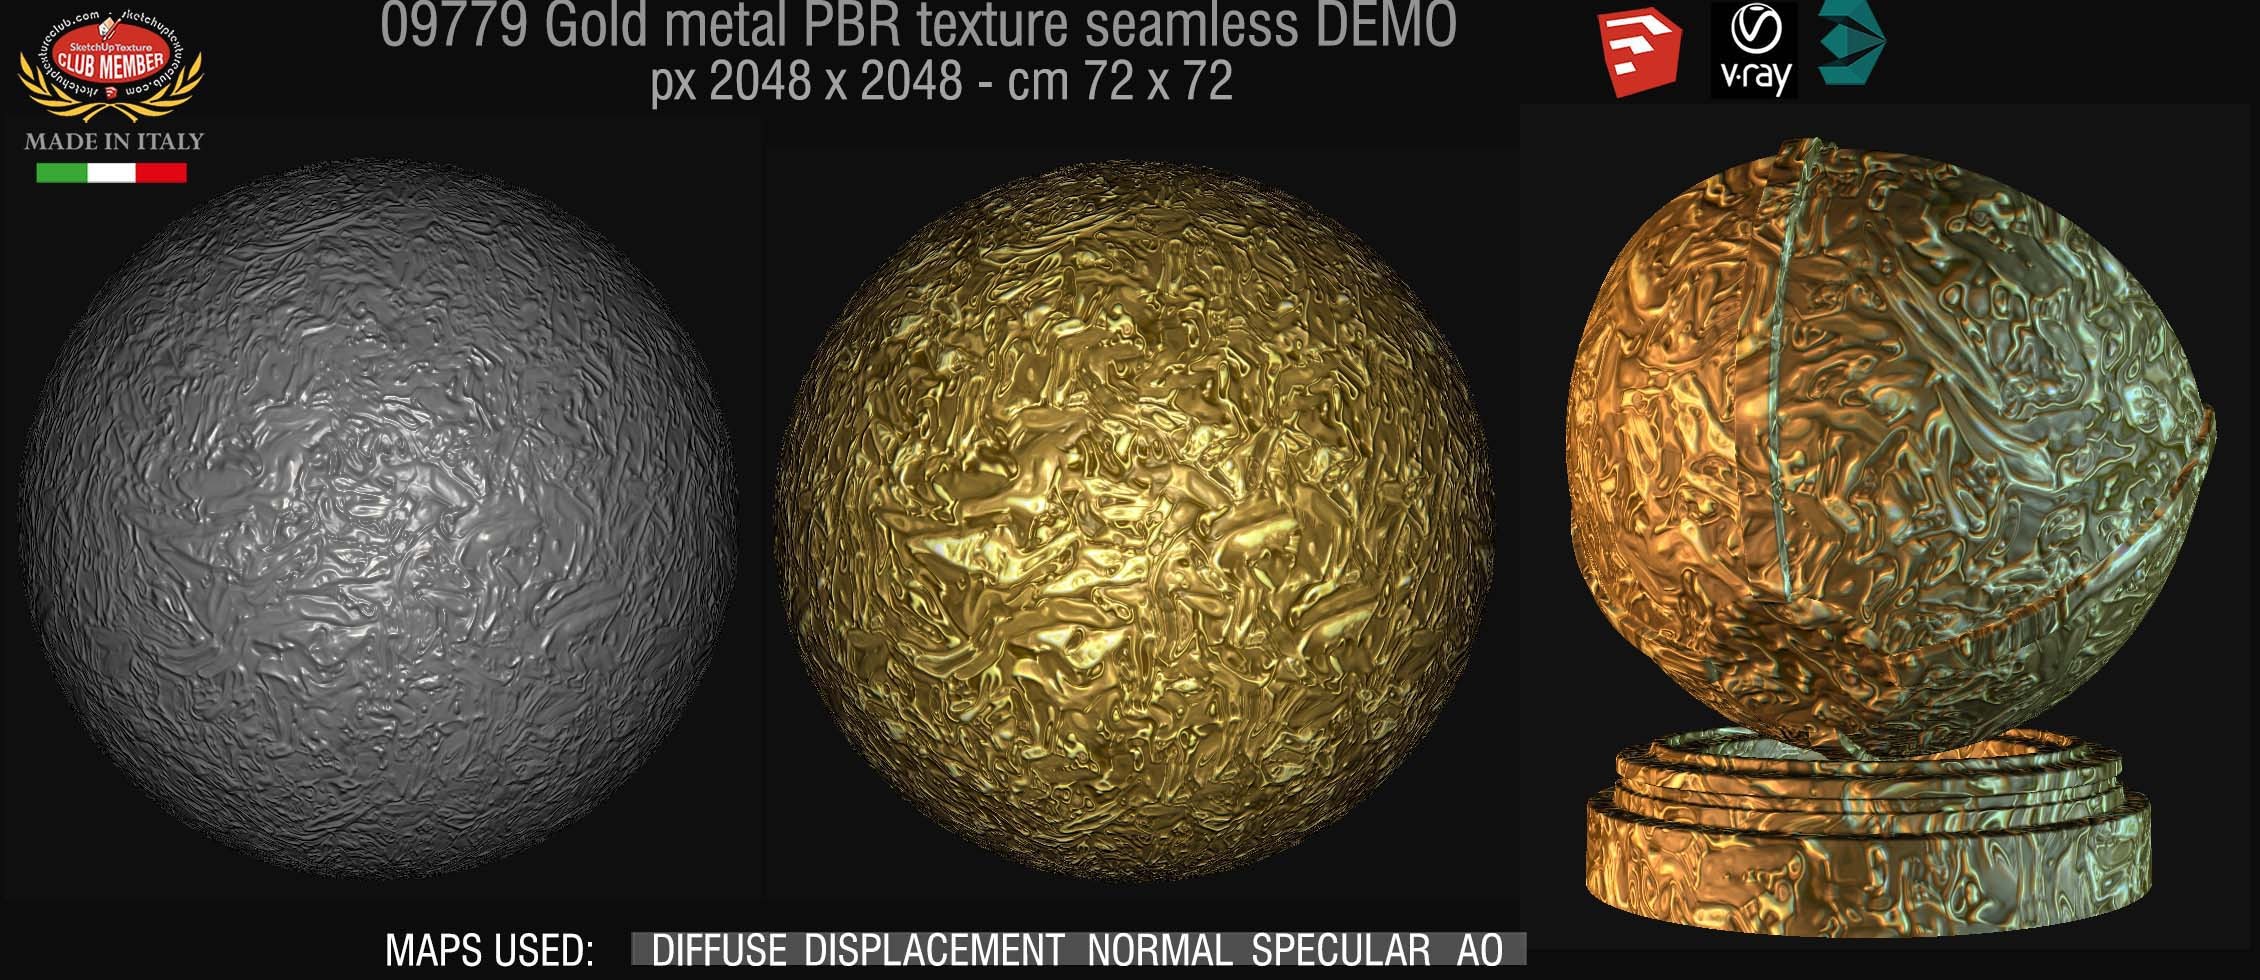 09779 Gold metal PBR texture seamless